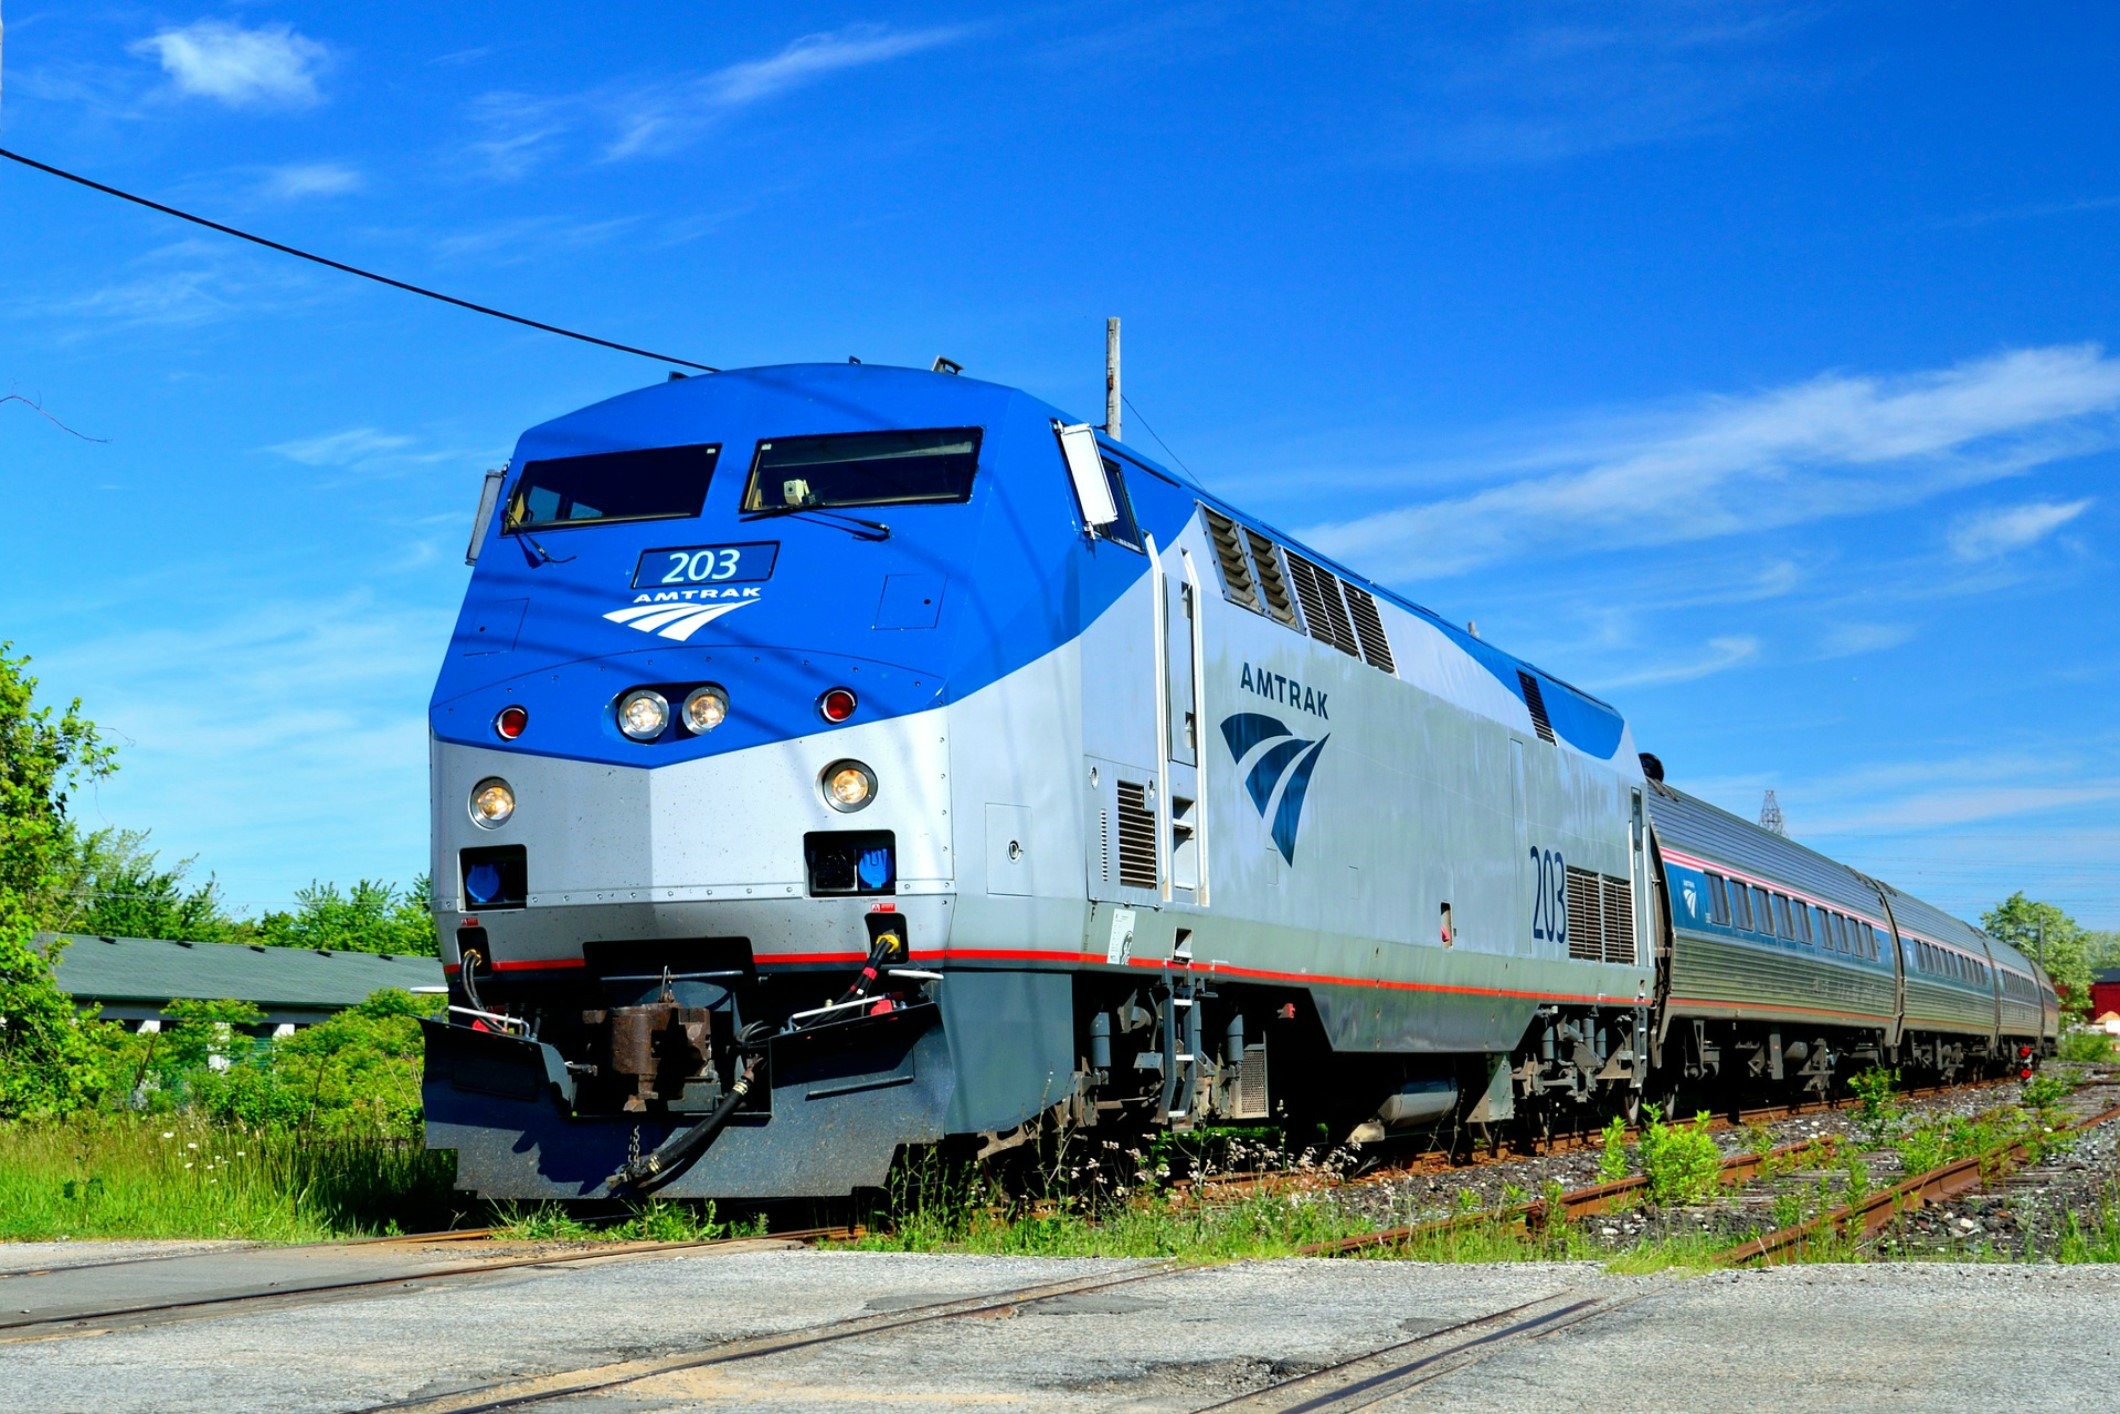 Amtrak train on rails